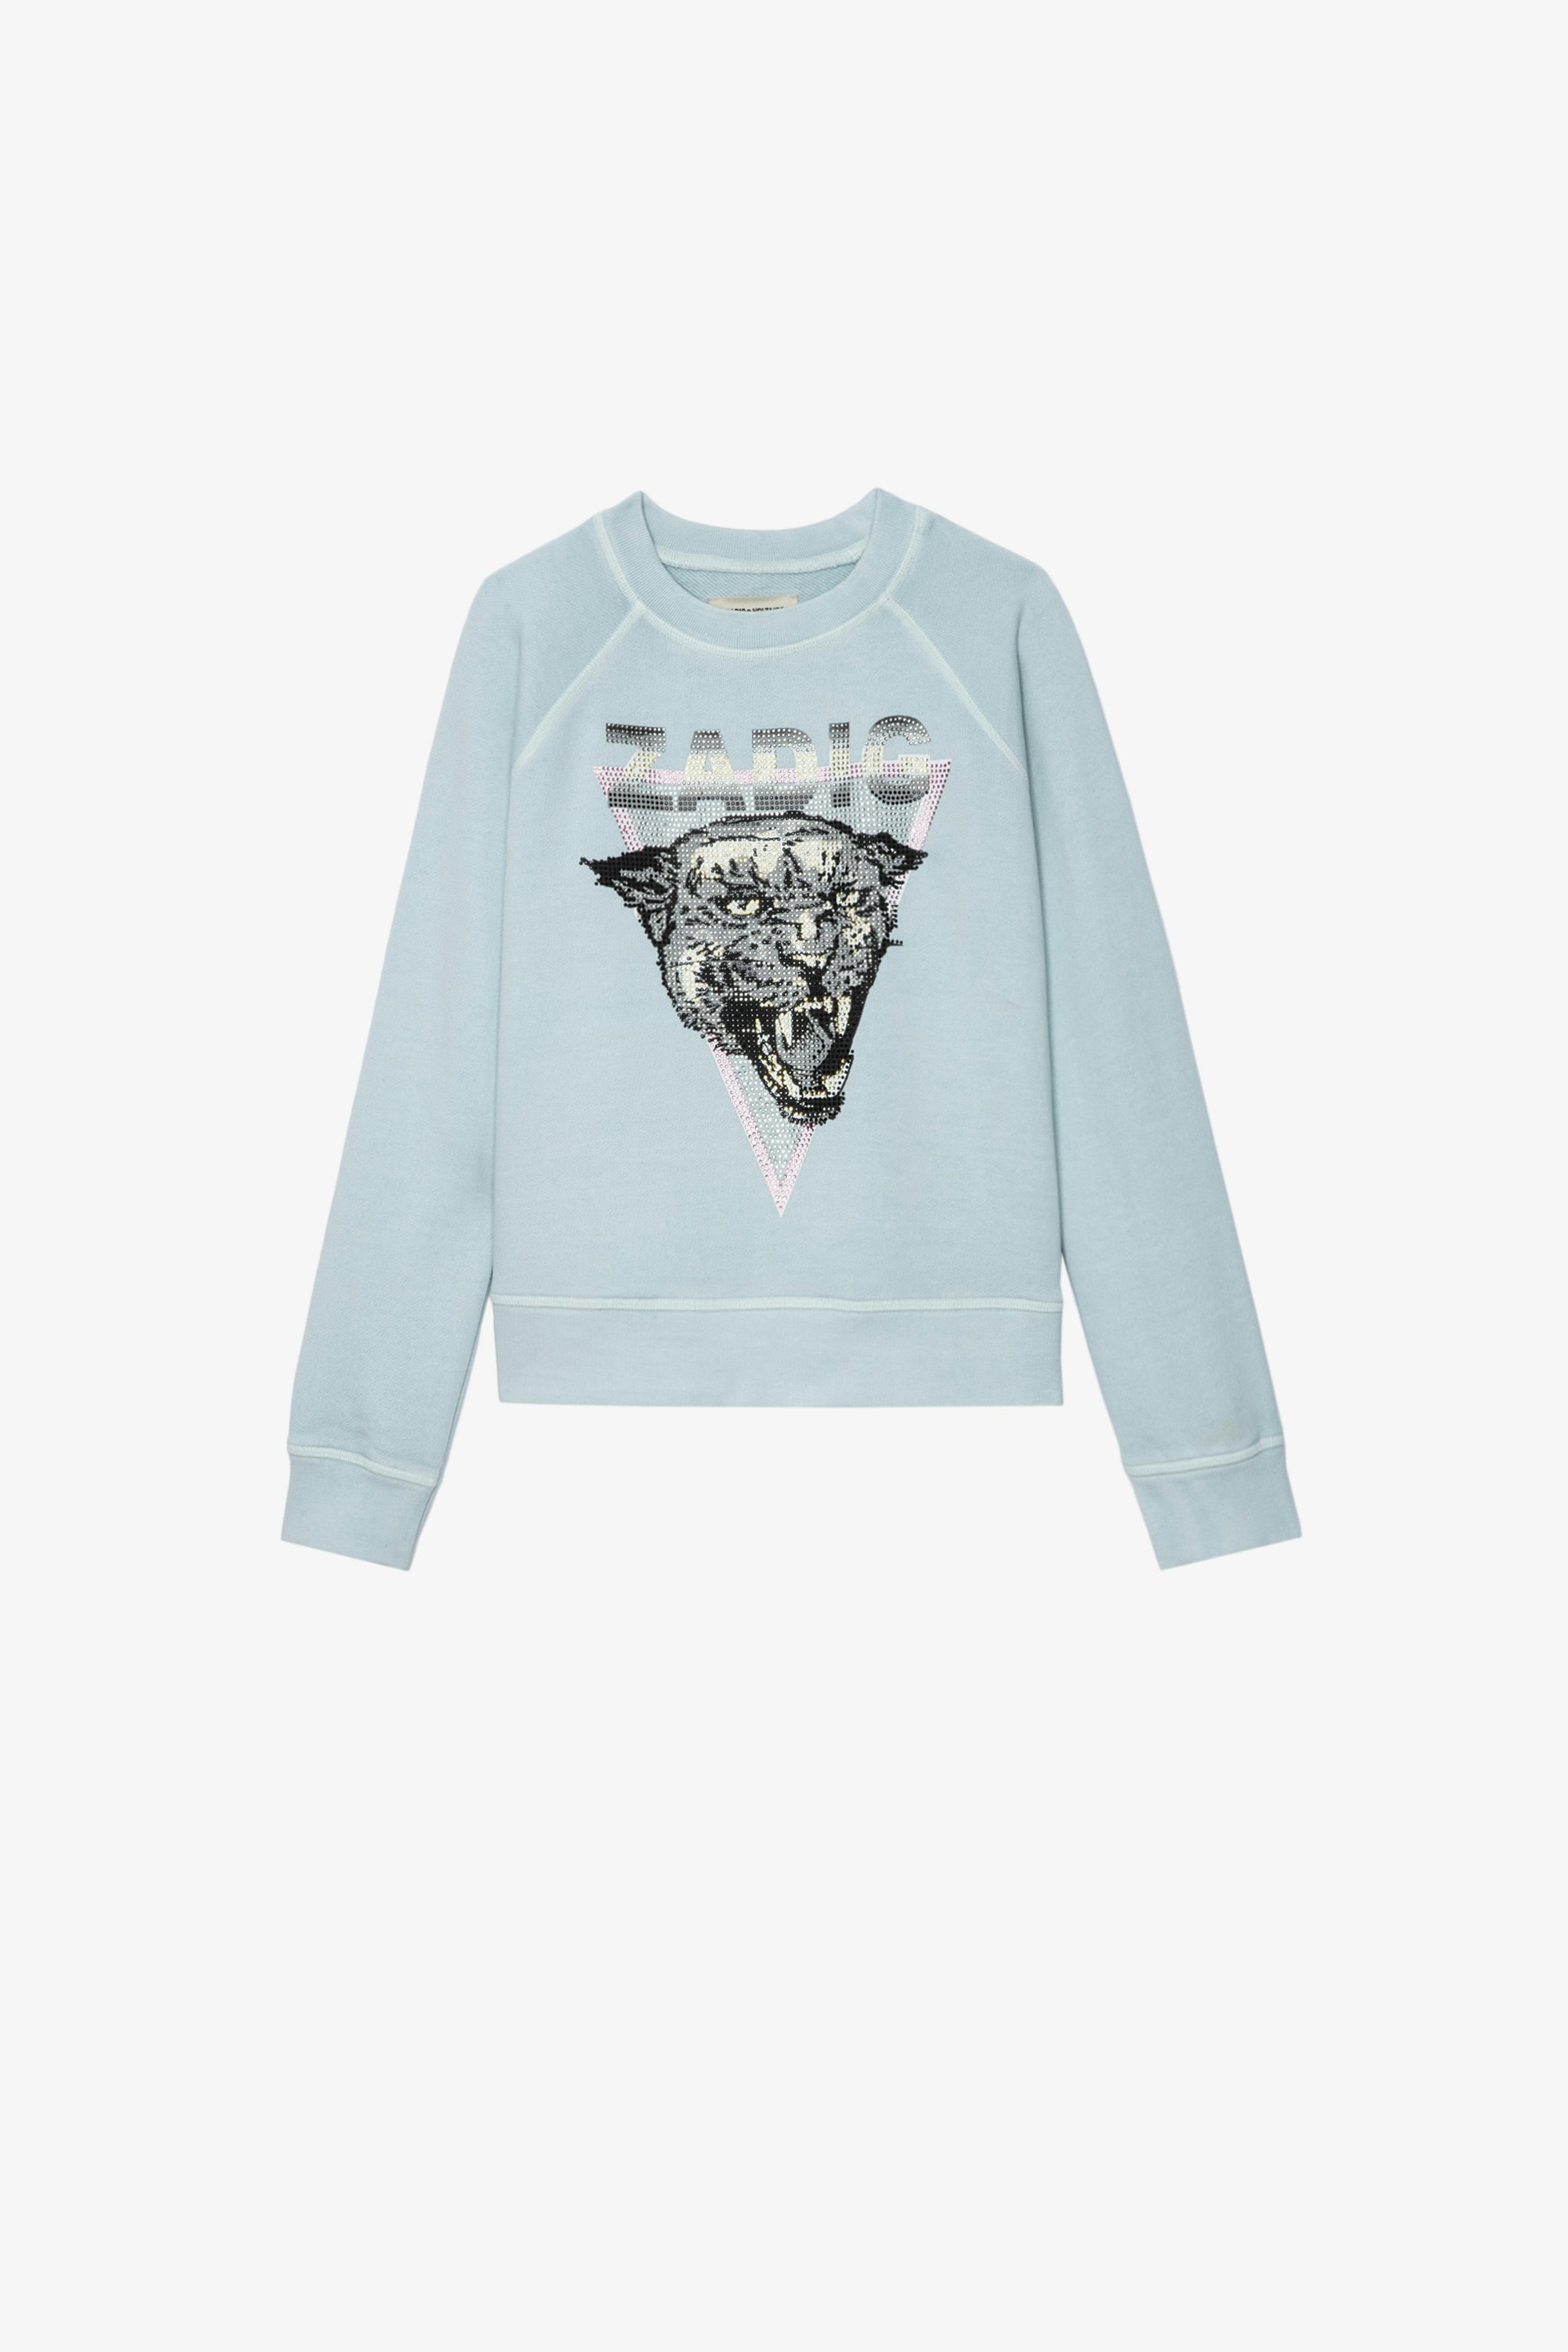 Kinder-Sweatshirt Upper Kinder-Sweatshirt aus himmelblauer Baumwolle mit einem mit Kristallen verzierten Tigermotiv